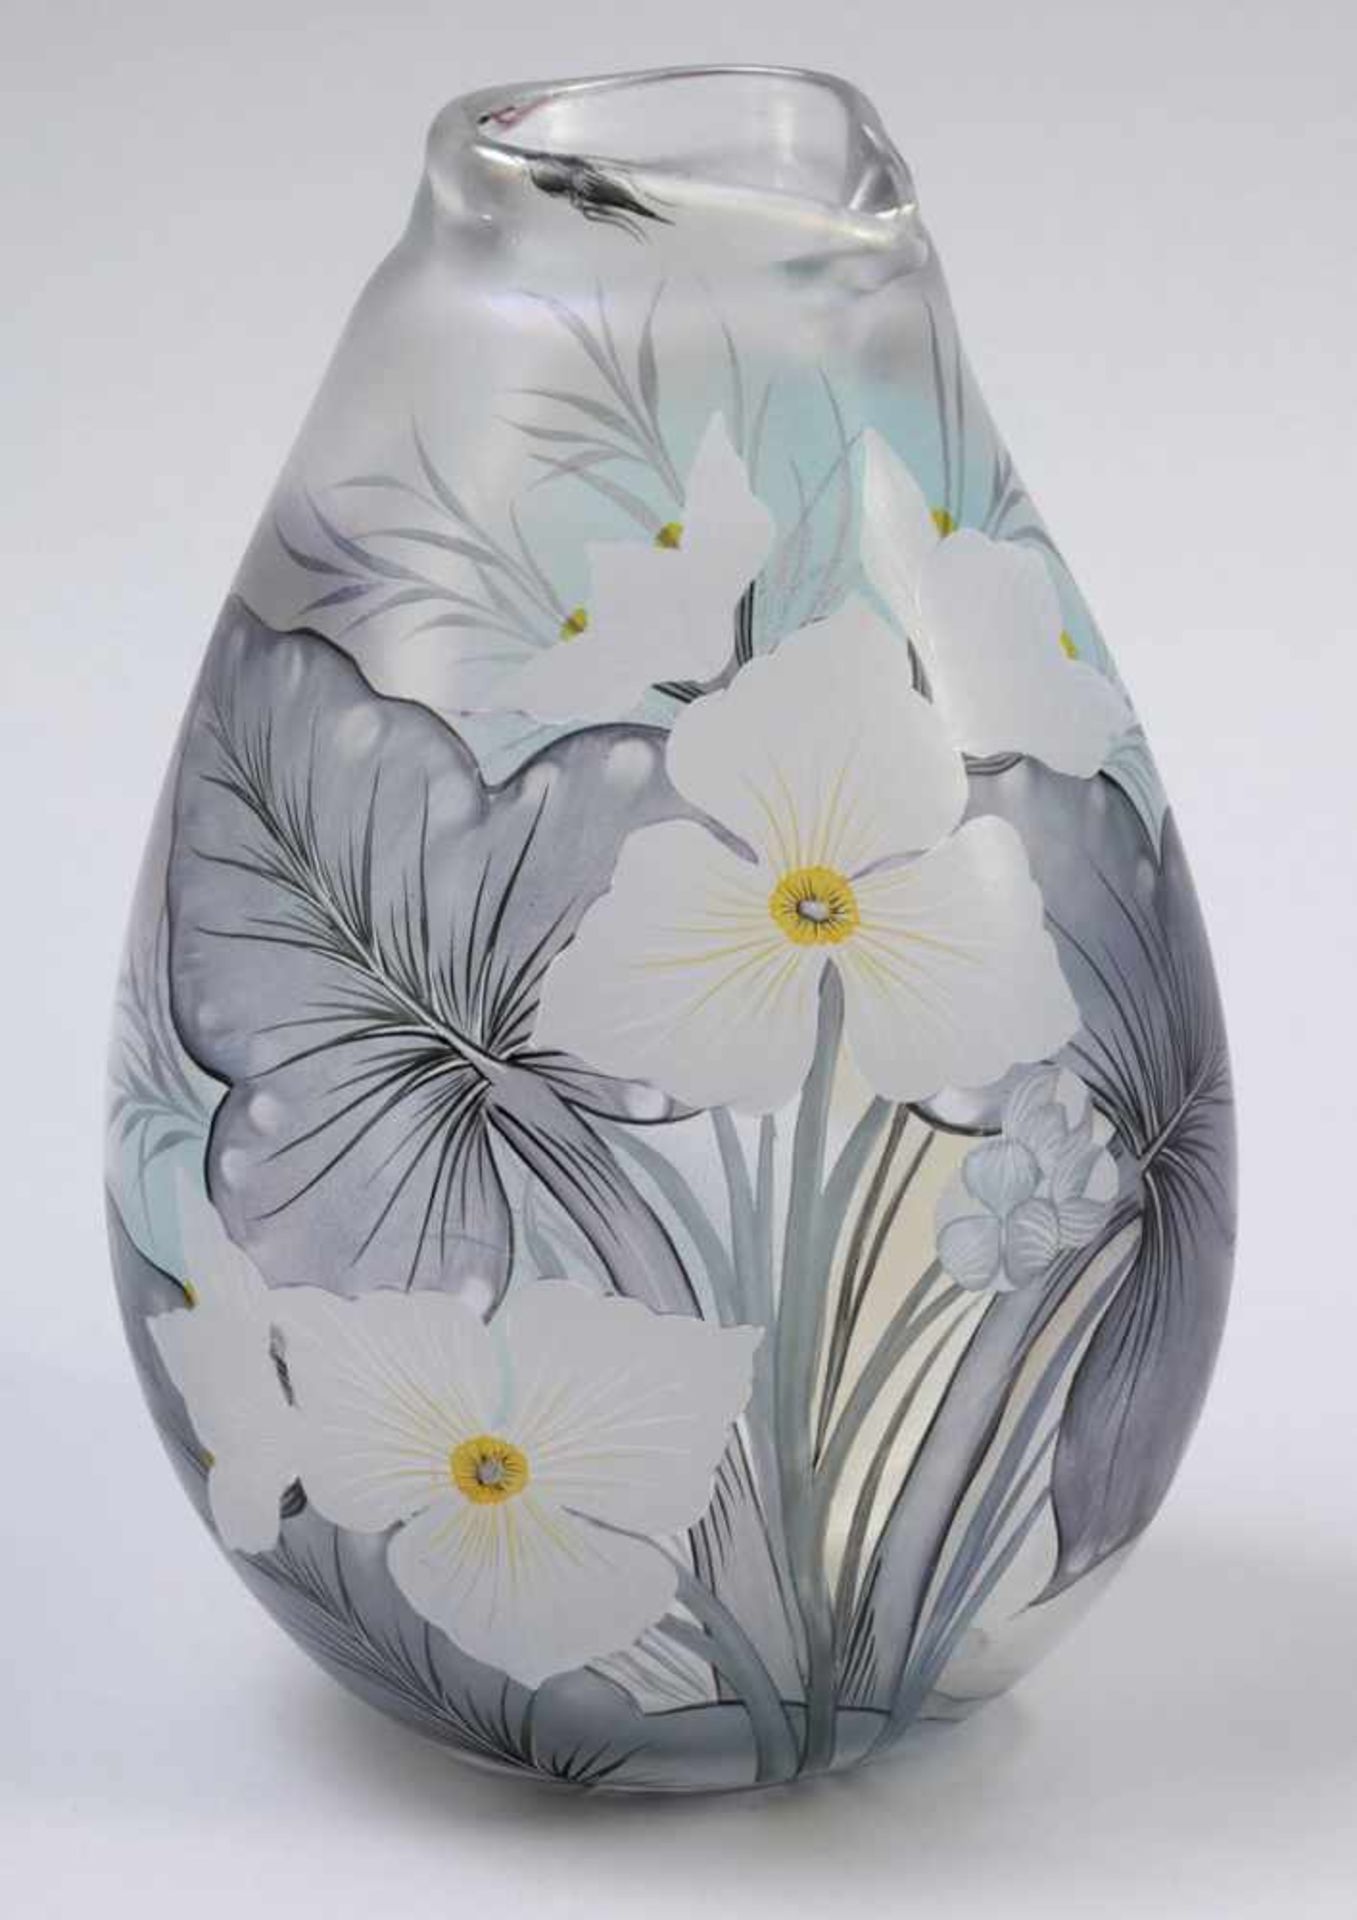 Ovale Vase mit Blume Glashütte Eisch, Frauenau 1994. Farbloses Glas. Polychrom bemalt. Irisierende